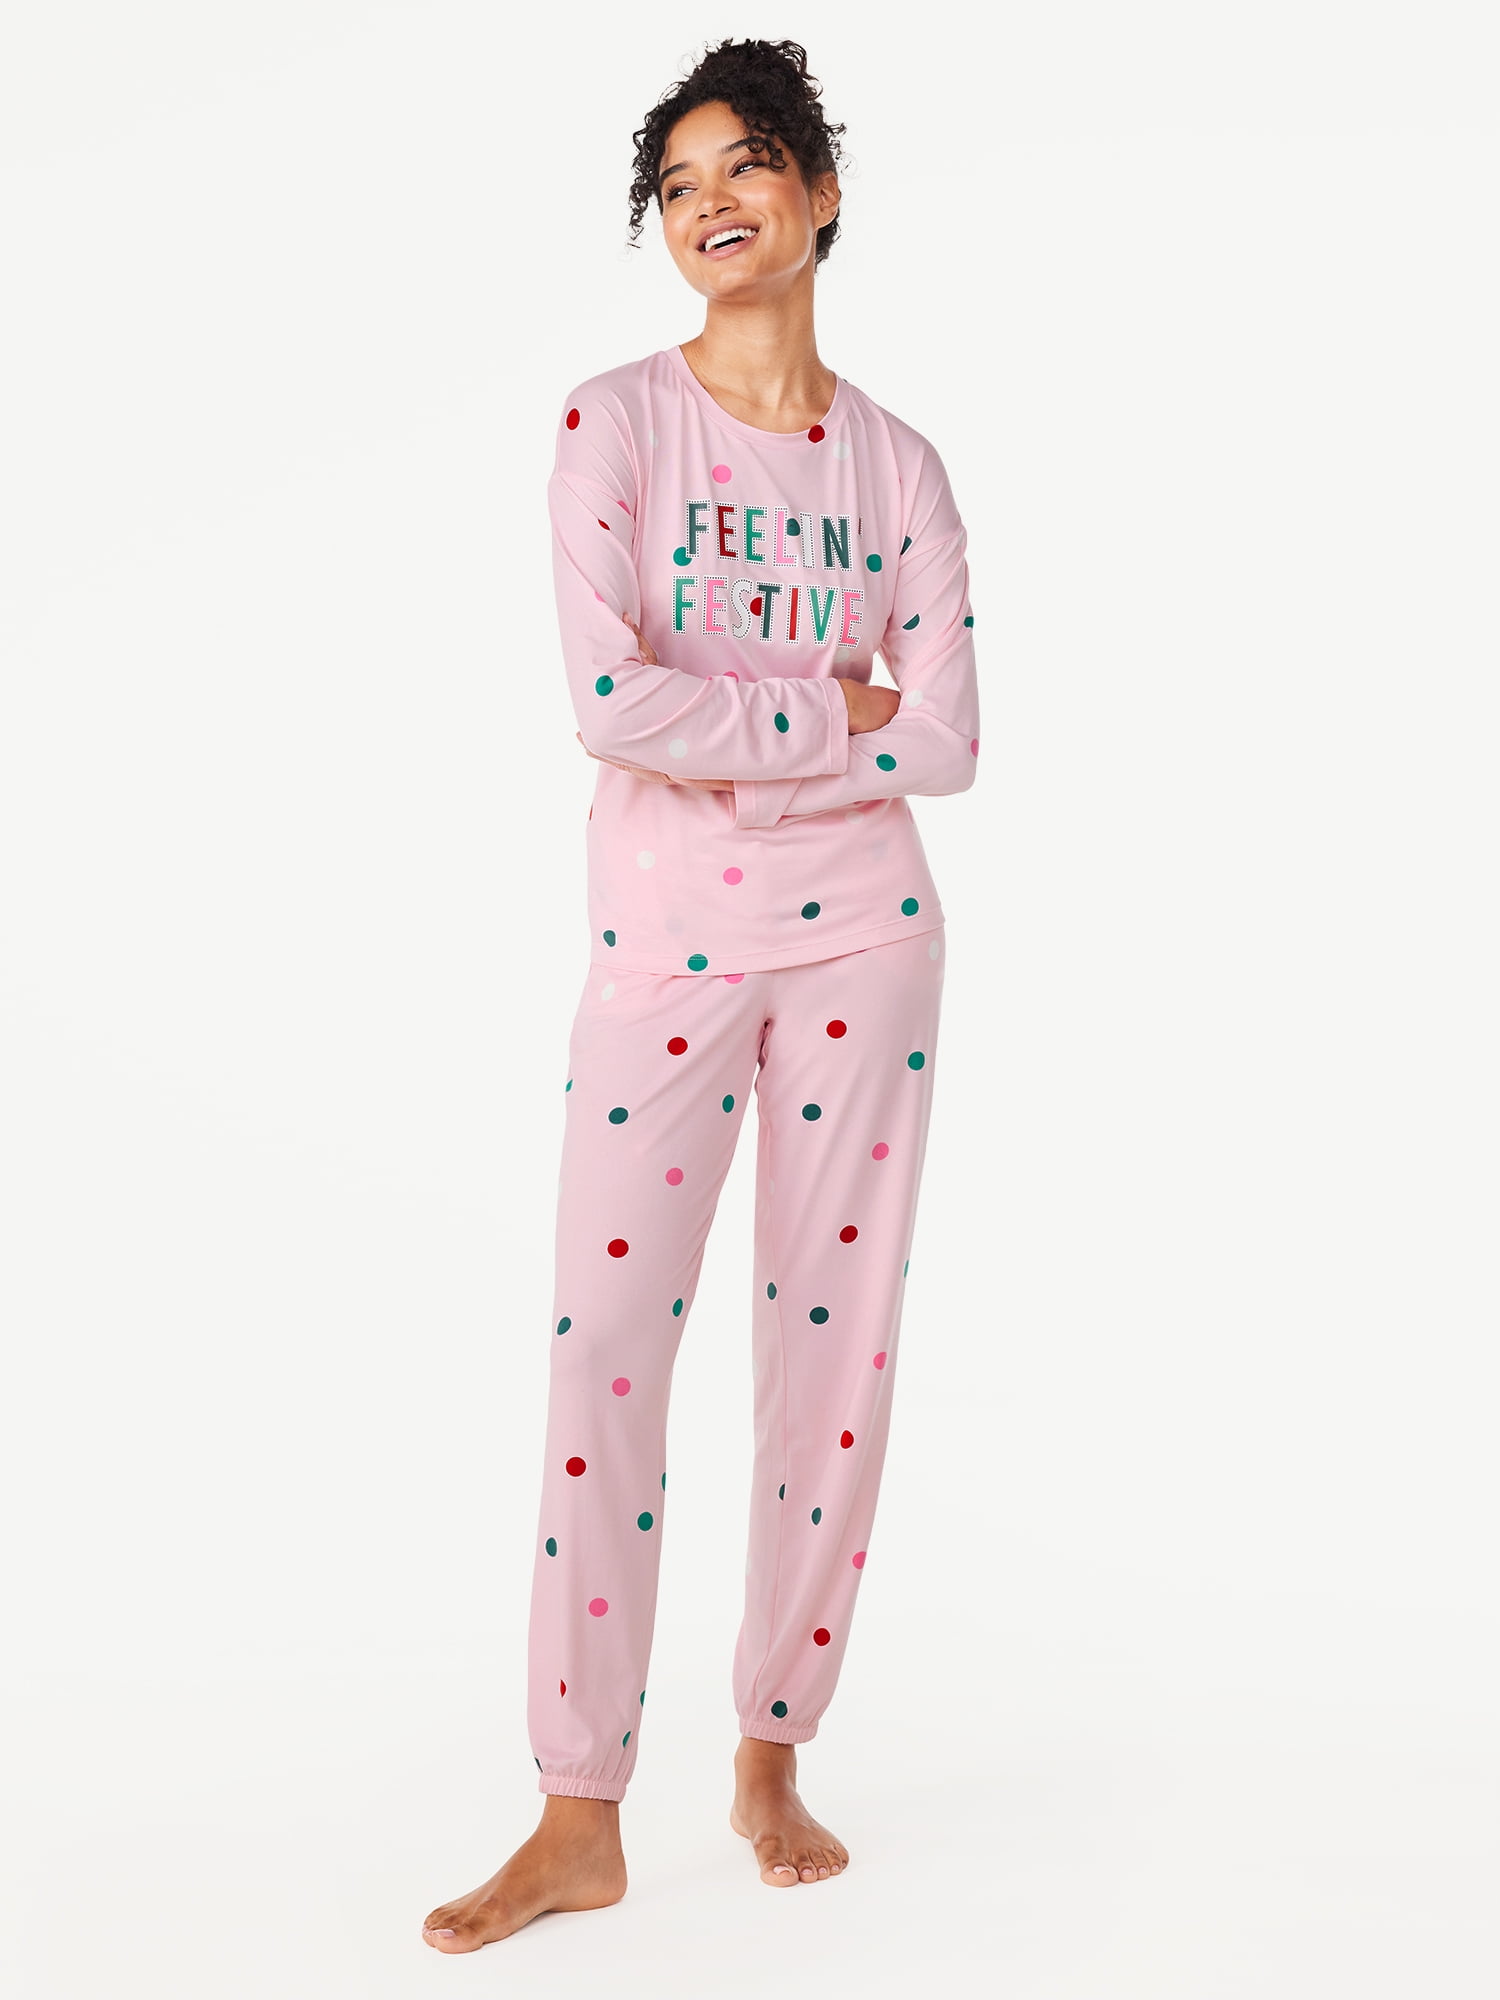 Joyspun Women's Long Sleeve Tee and Joggers, 2-Piece Pajama Set, Sizes S-3X  